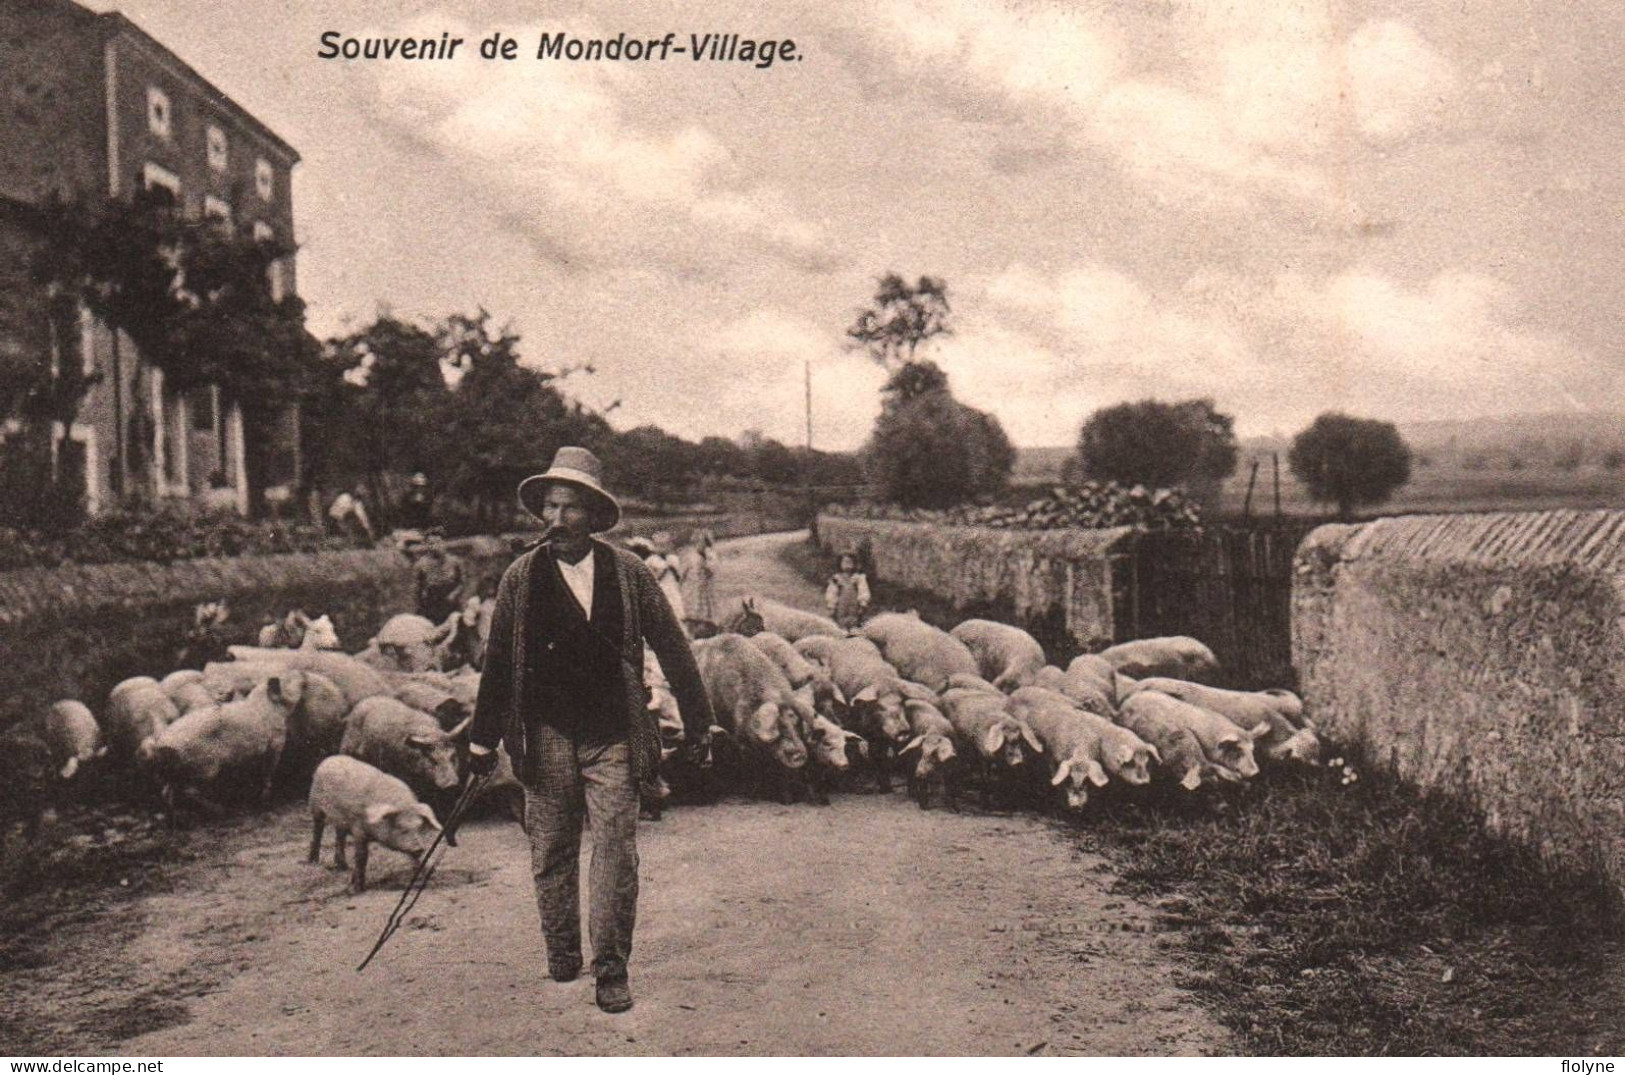 Mondorf Village - Souvenir Du Village - Berger Troupeau De Cochons - Agriculture - Luxembourg - Bad Mondorf